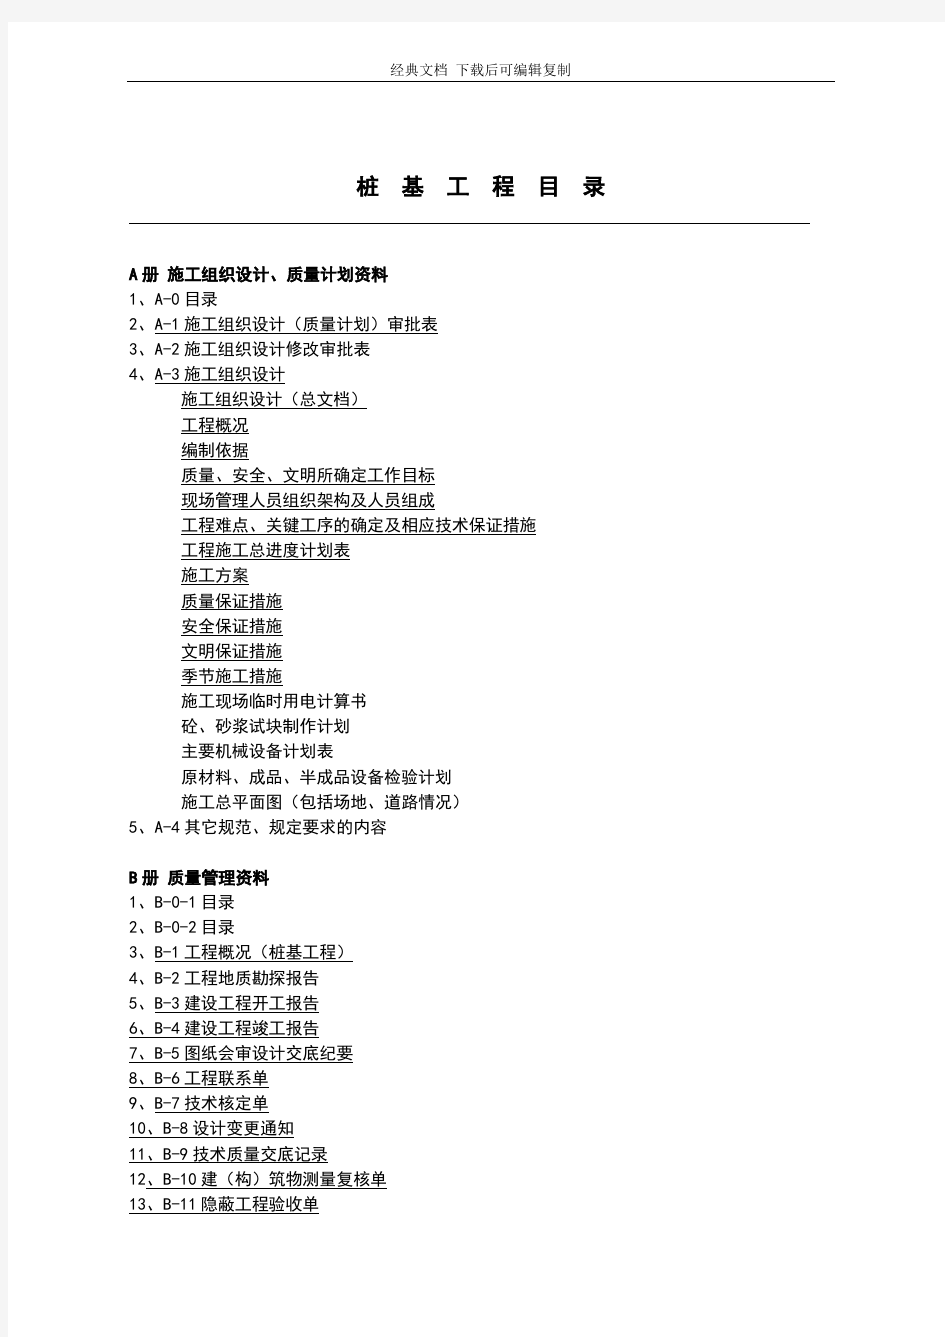 上海市桩基资料最新表格